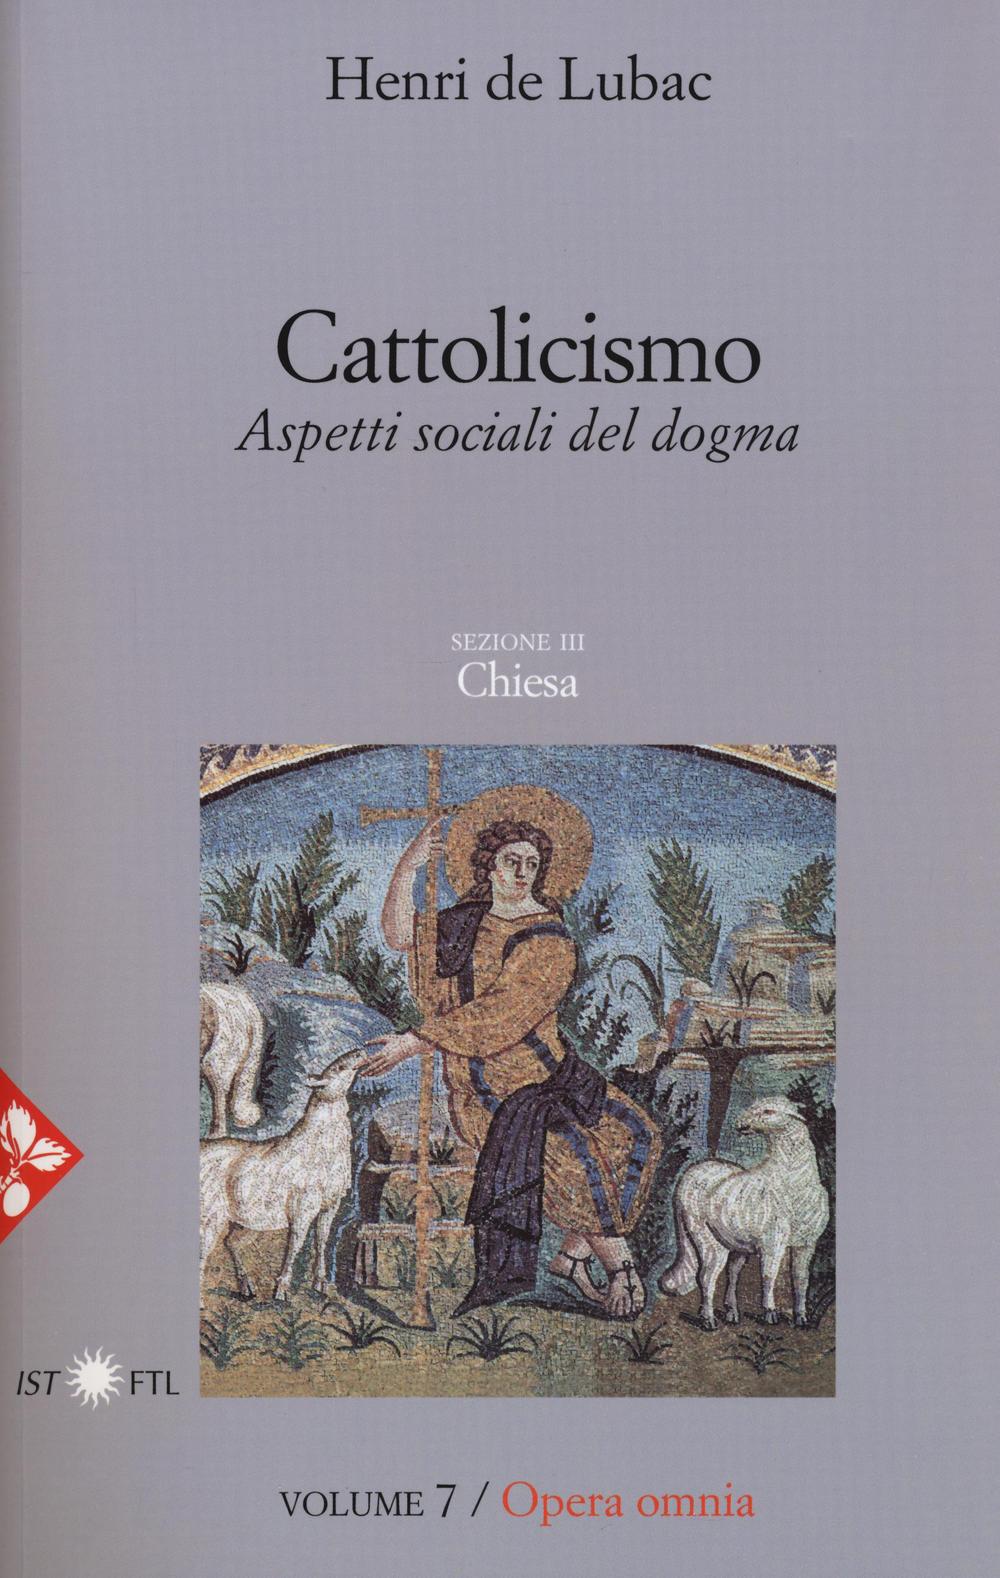 Opera omnia. Vol. 7: Cattolicismo. Aspetti sociali del dogma. Chiesa